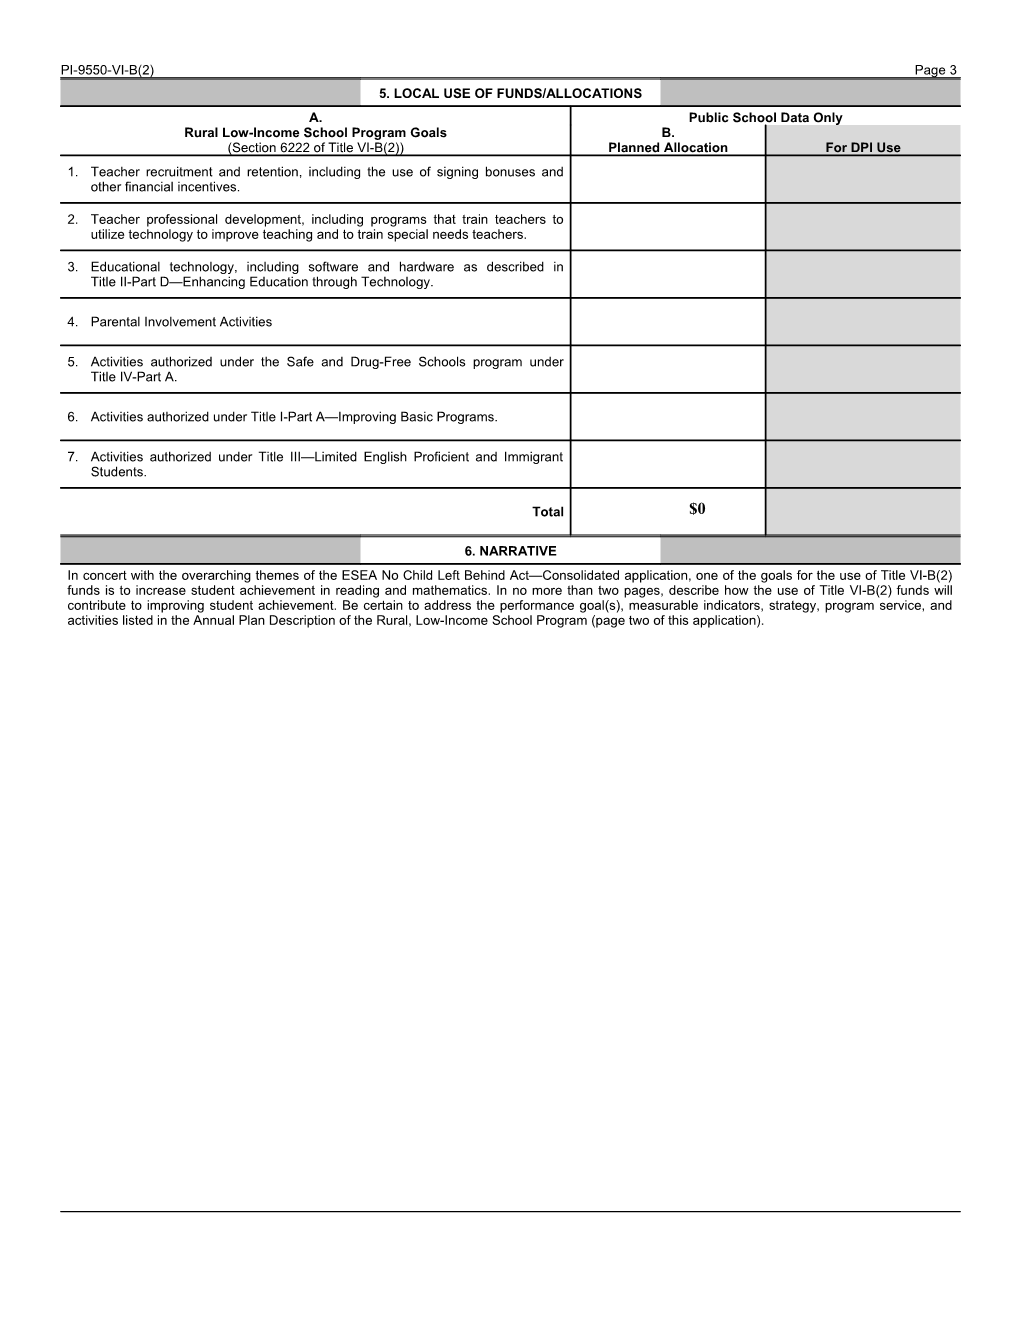 PI-9550-VI-B(2) Grant Application Rural, Low-Income School Achievement Program